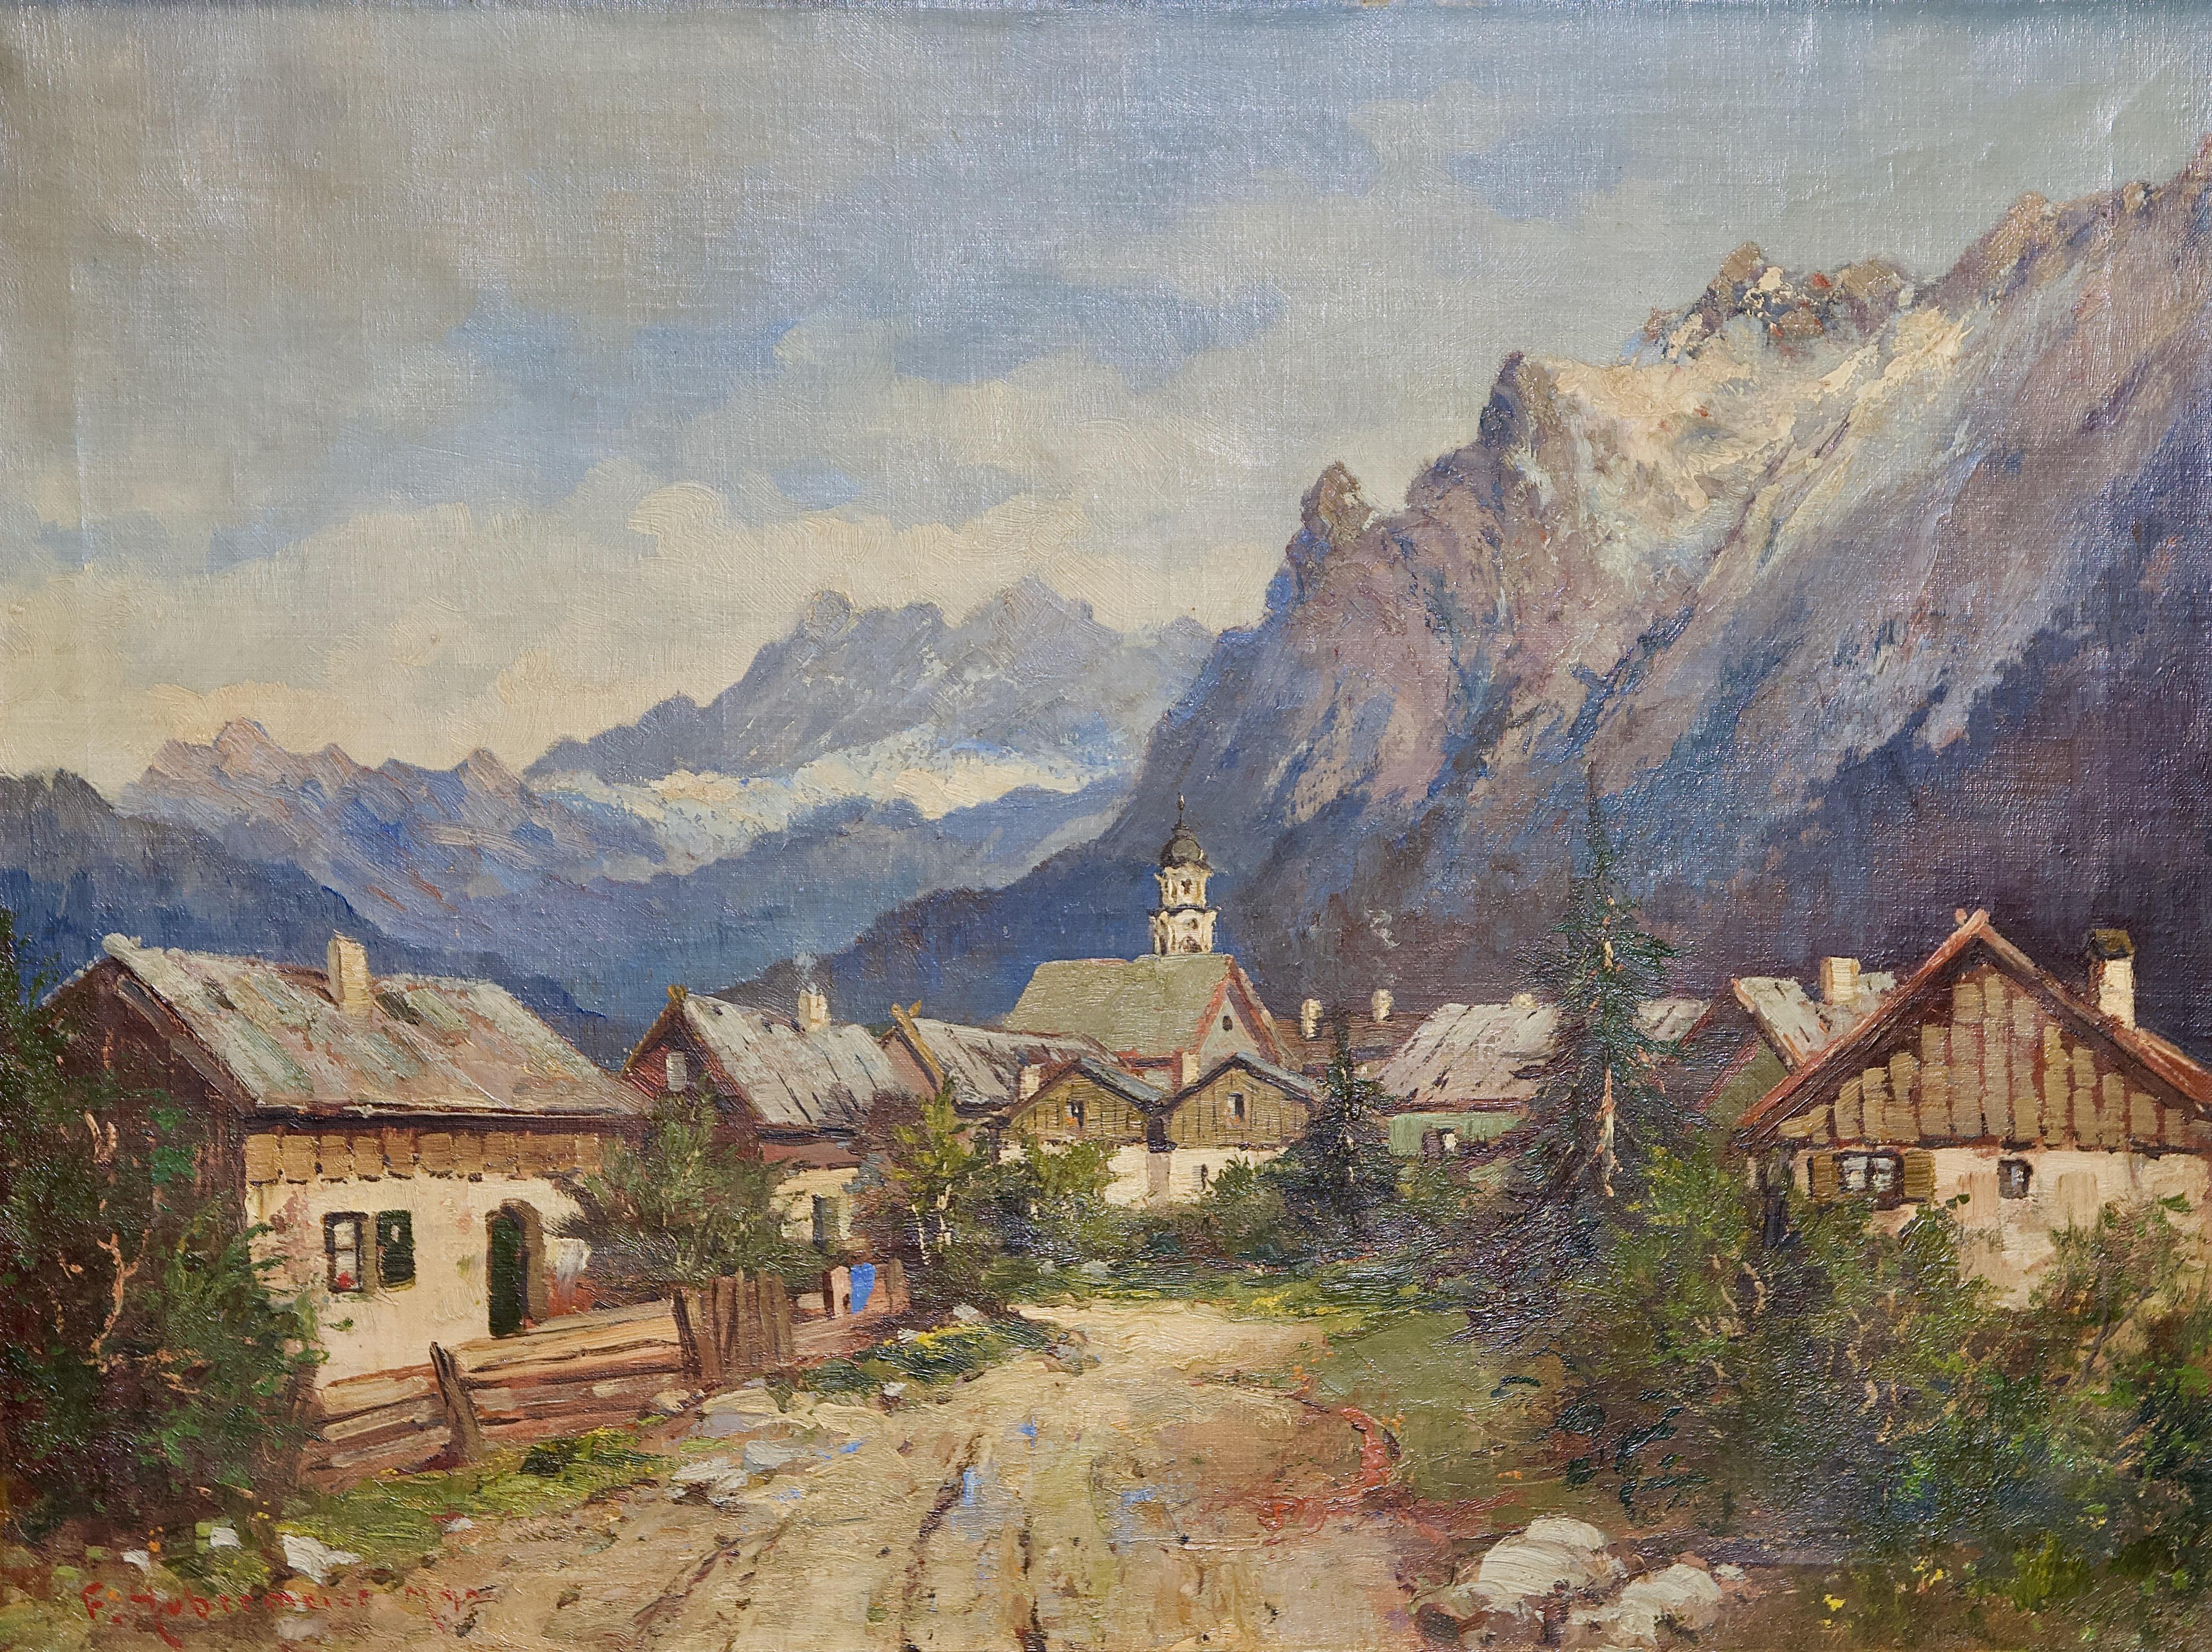 Peinture à l'huile ancienne, paysage alpin, Village dans les montagnes. - Painting de F. Hubermeier